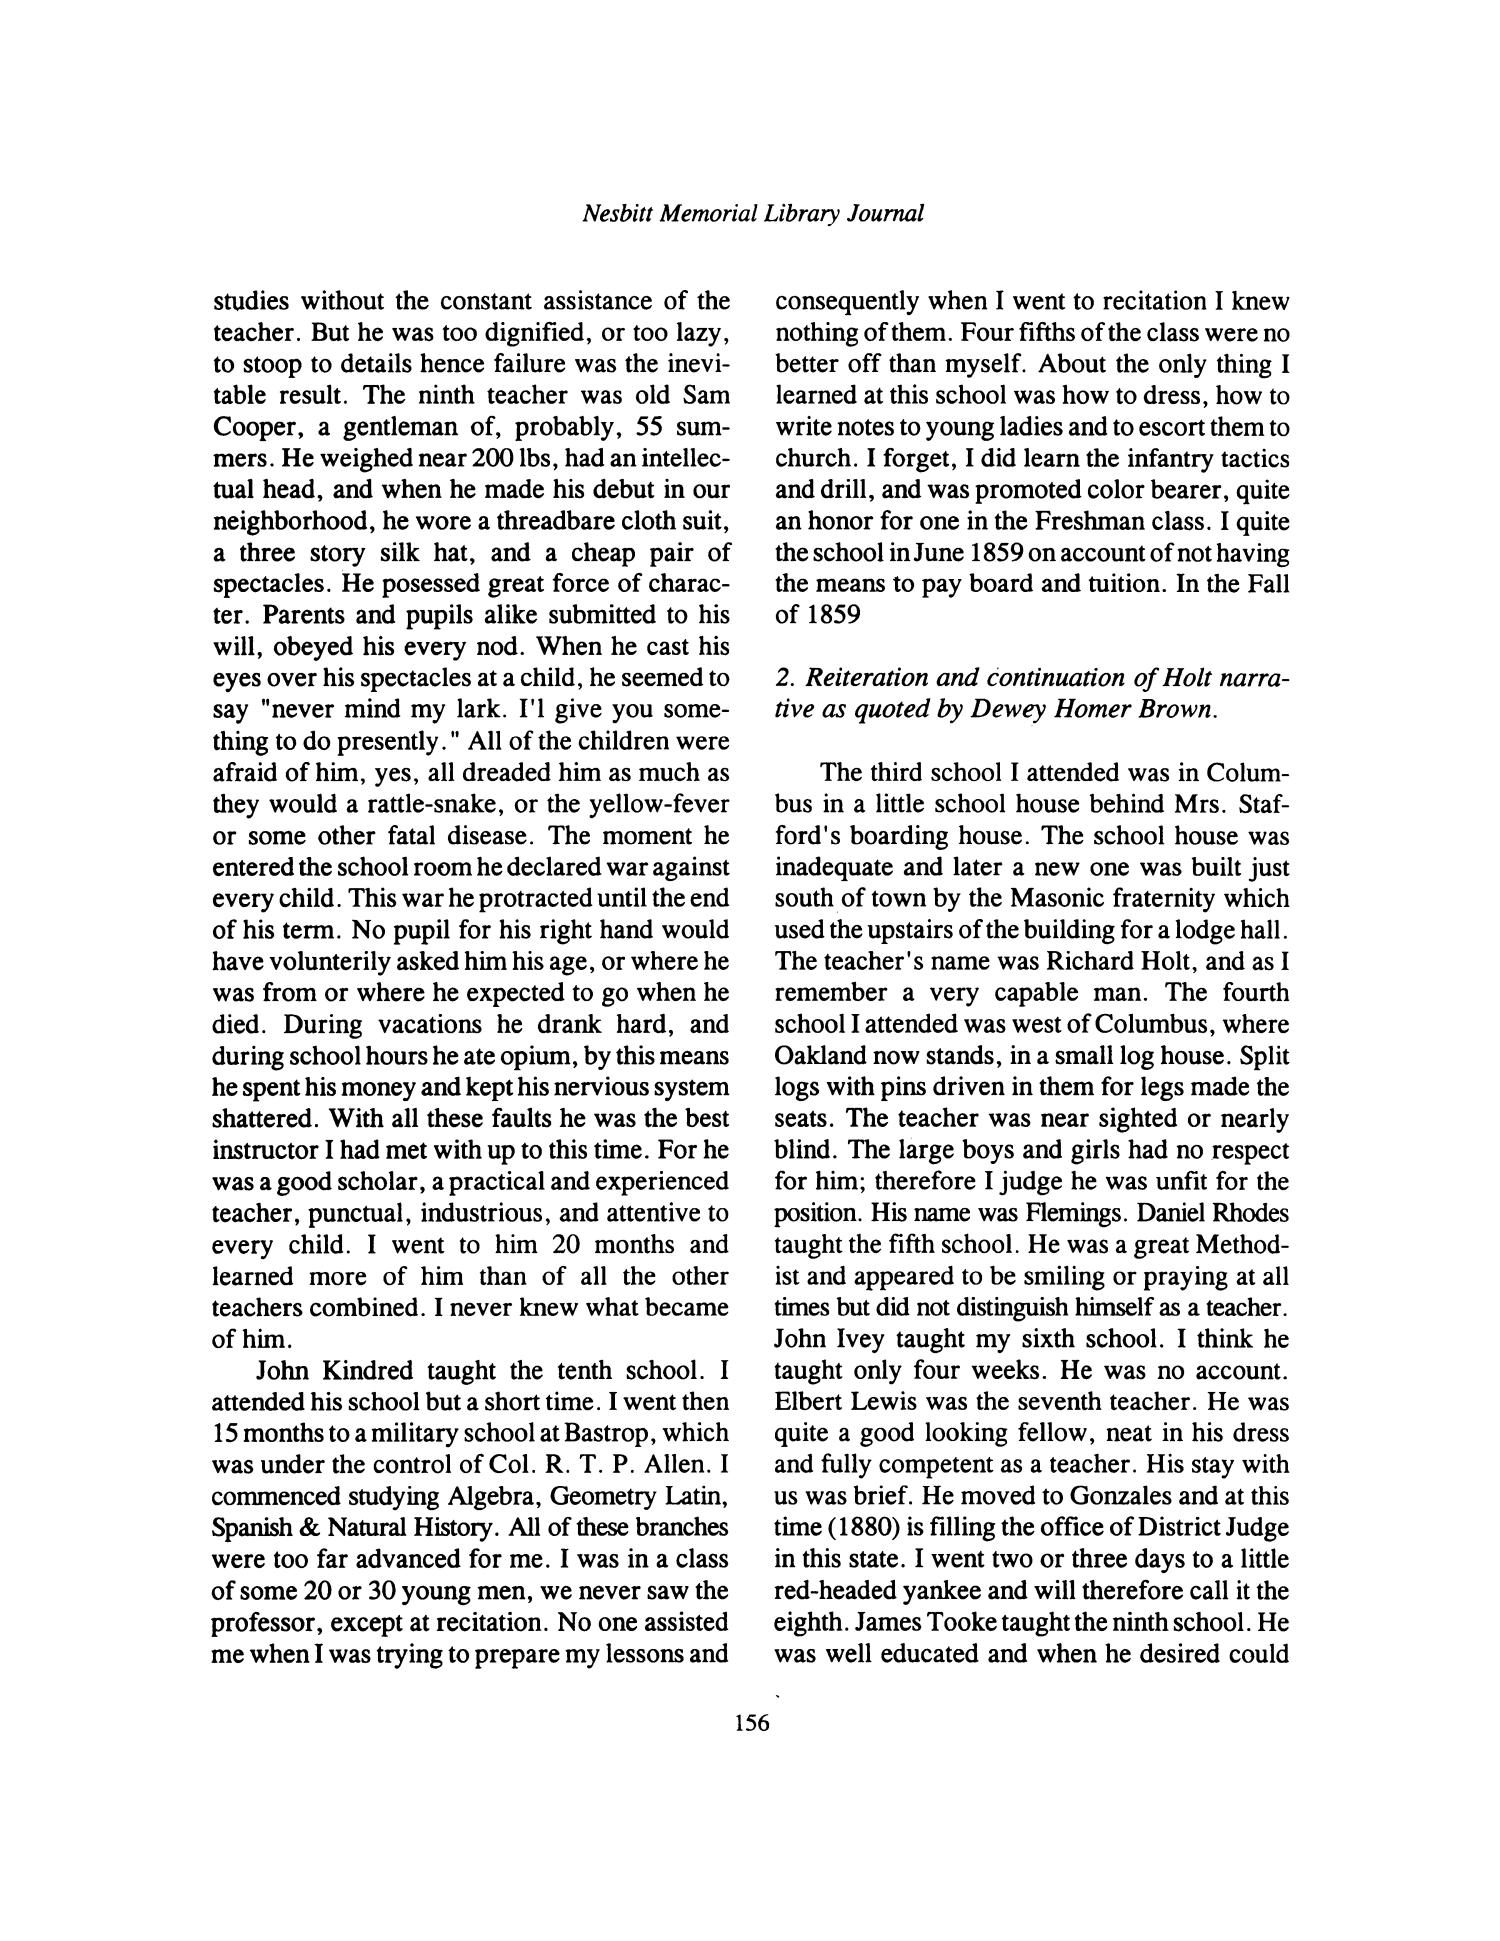 Nesbitt Memorial Library Journal, Volume 6, Number 3, September 1996
                                                
                                                    156
                                                